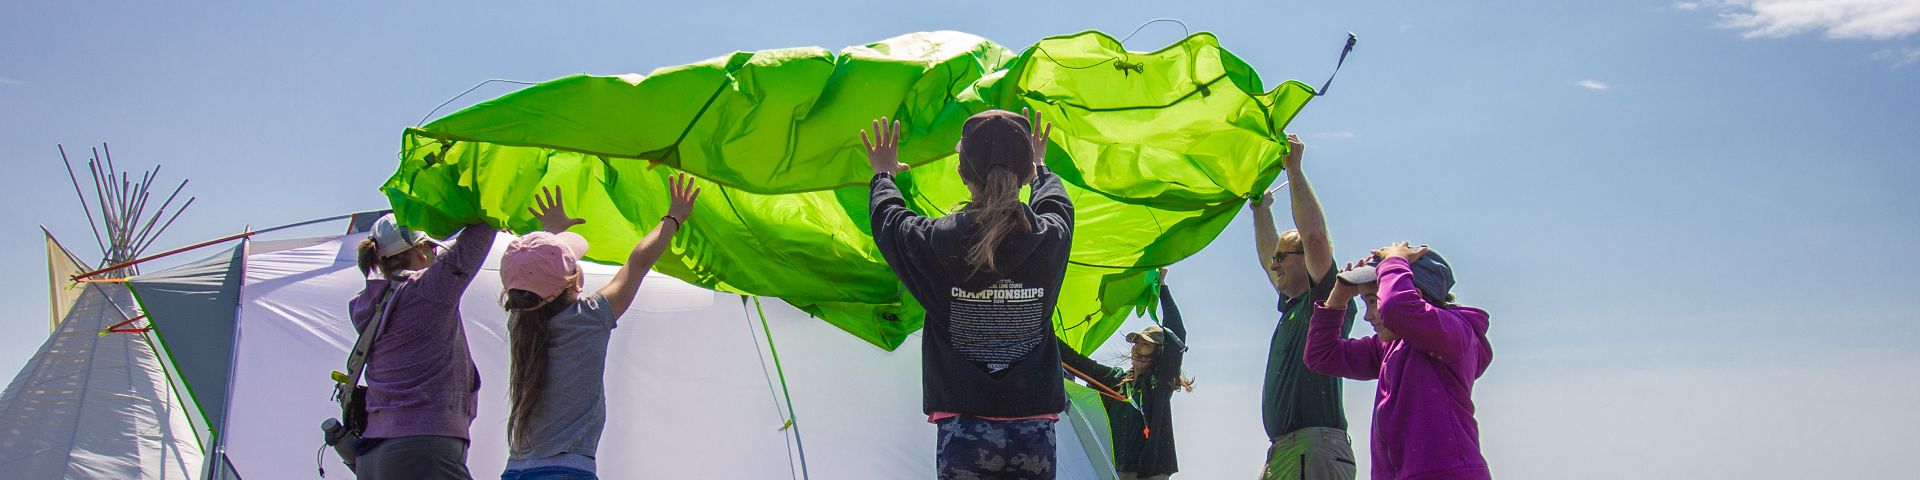 Une personne en uniforme de Parcs Canada monte une tente avec un groupe de jeunes visiteurs au lieu historique national de Port au Choix